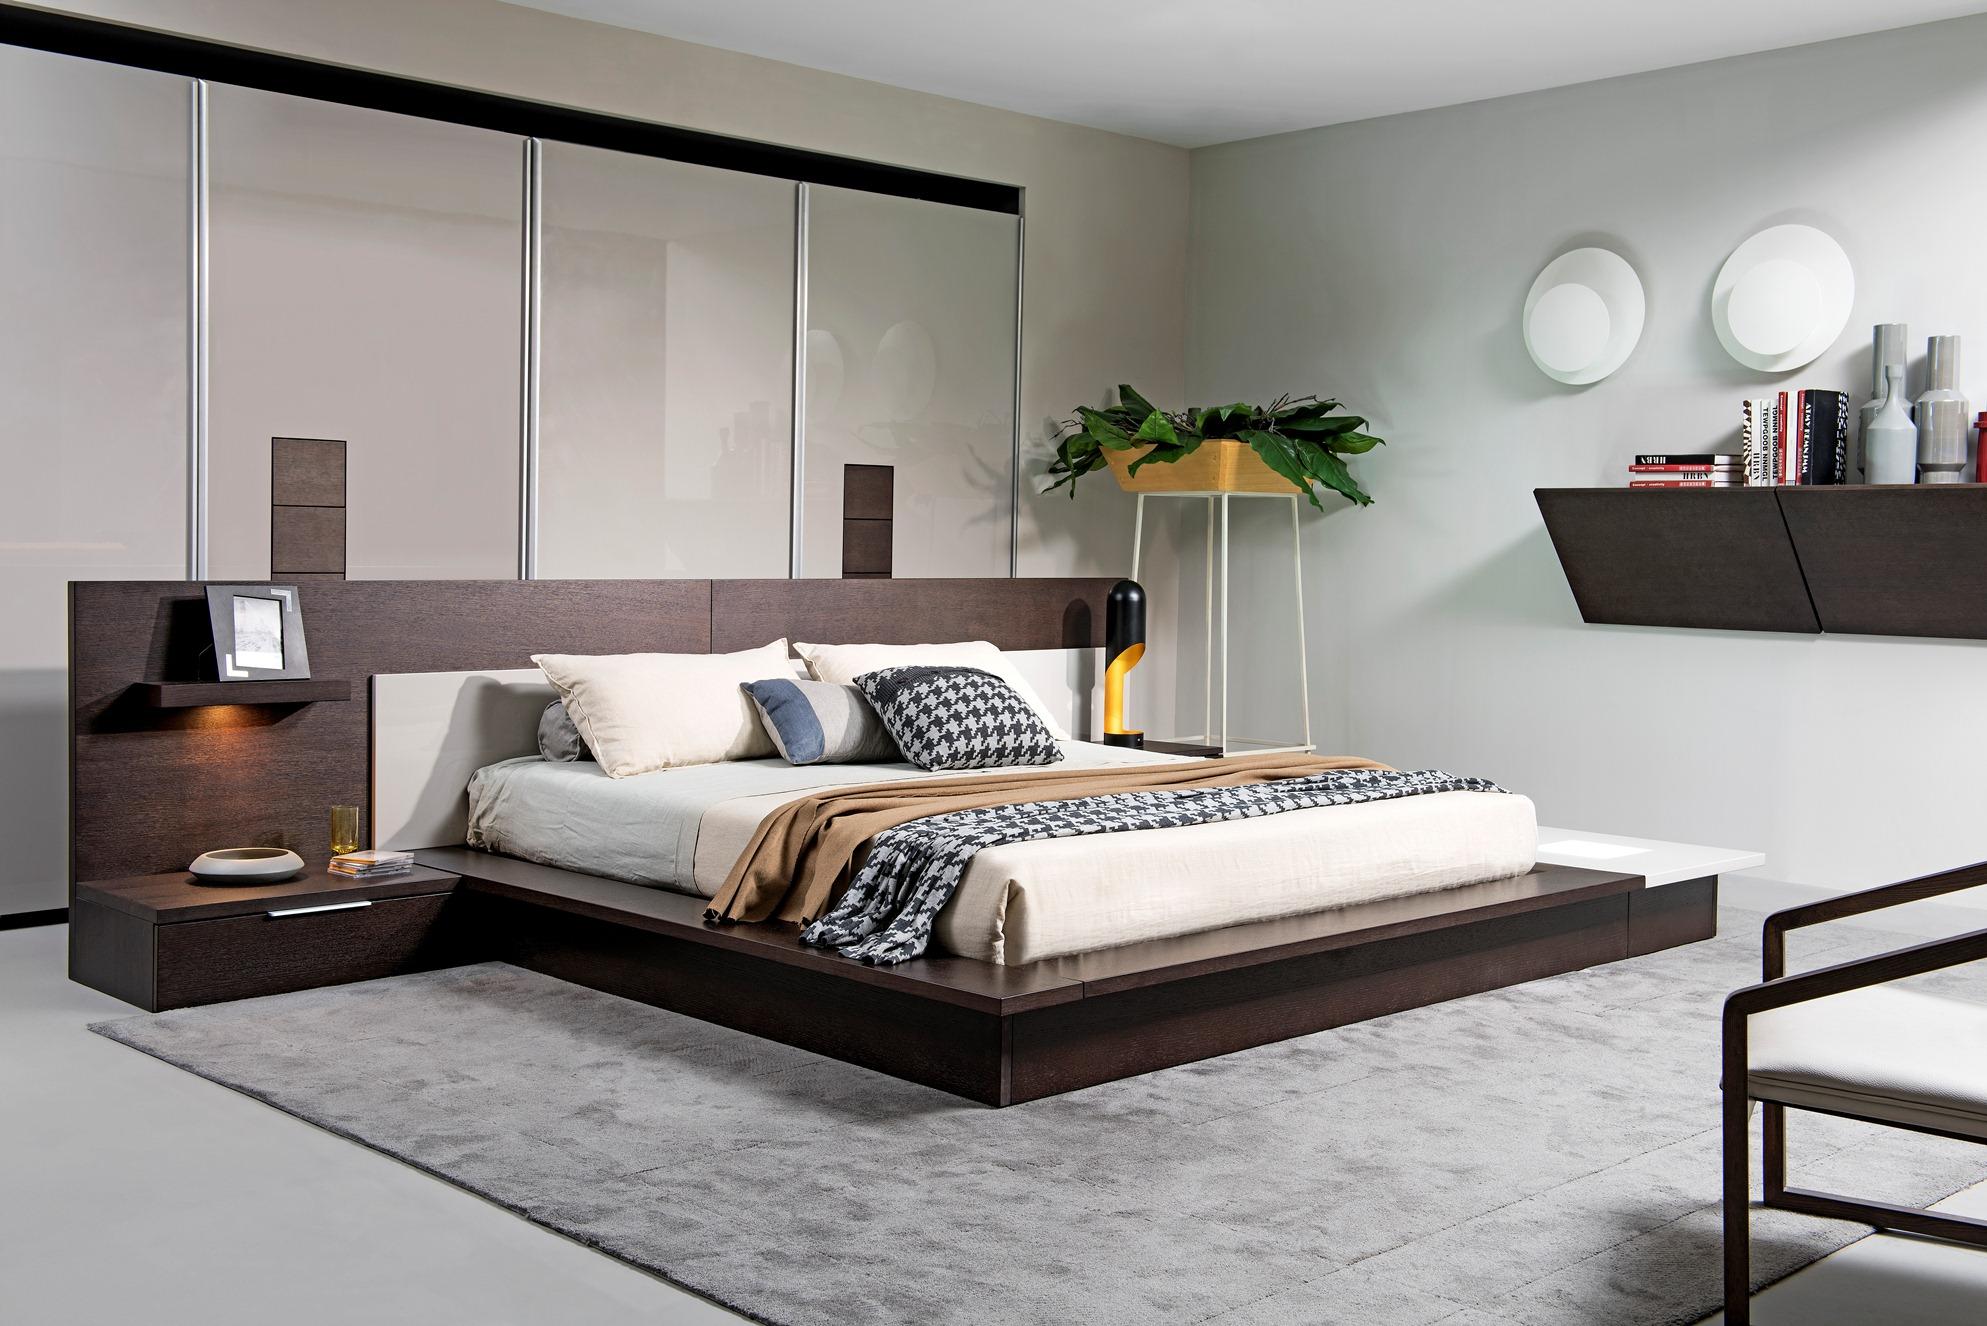 

    
VIG Modrest Torino Brown Grey King Bedroom Set 4 Ps w/Lights Built-in Nightstand
